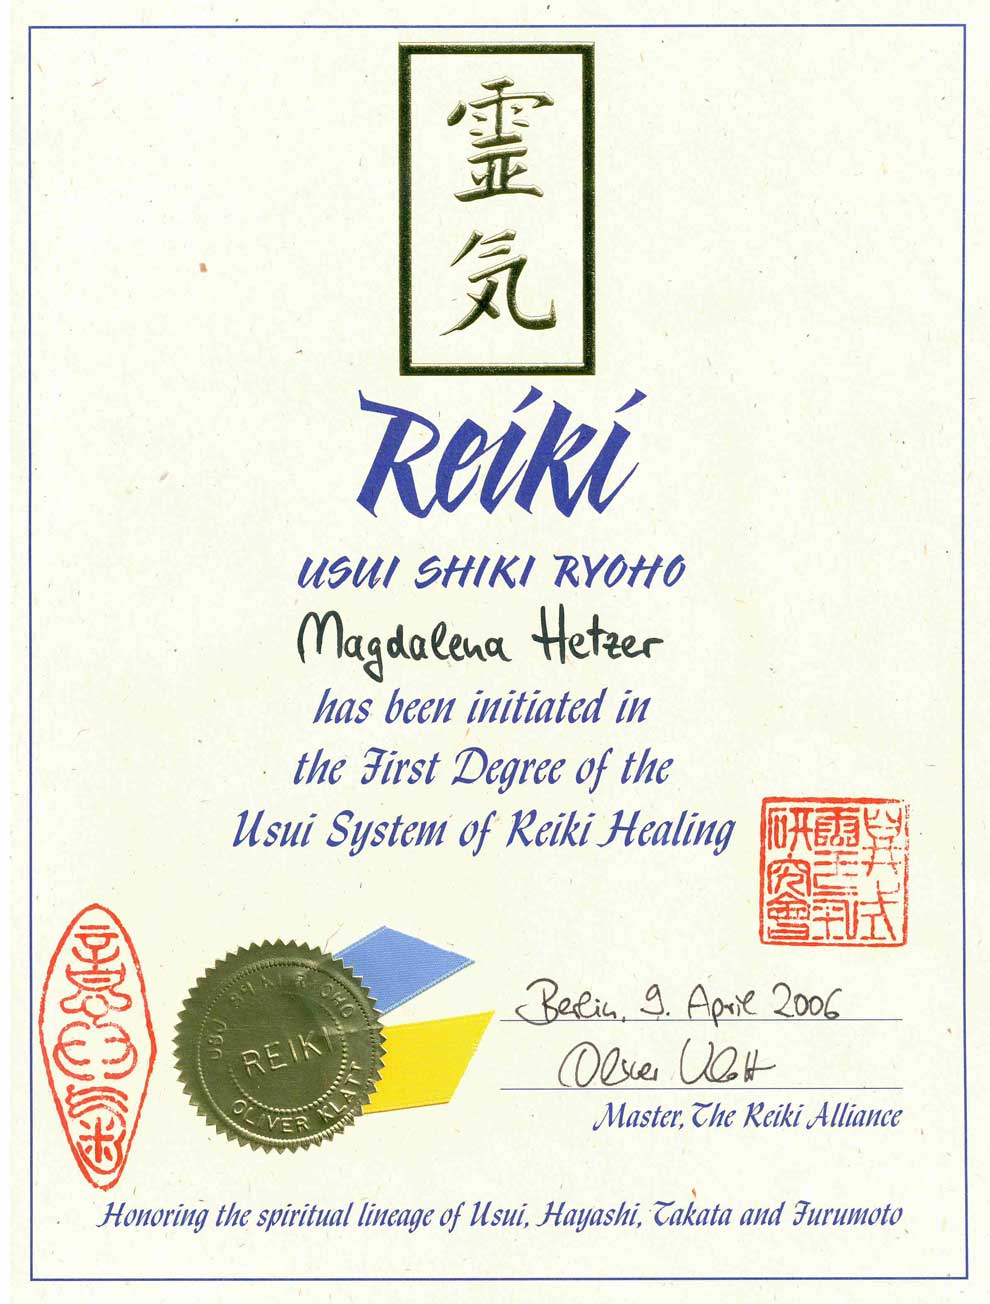 Bild von der Reiki Erster Grad Urkunde von Magdalena Hetzer